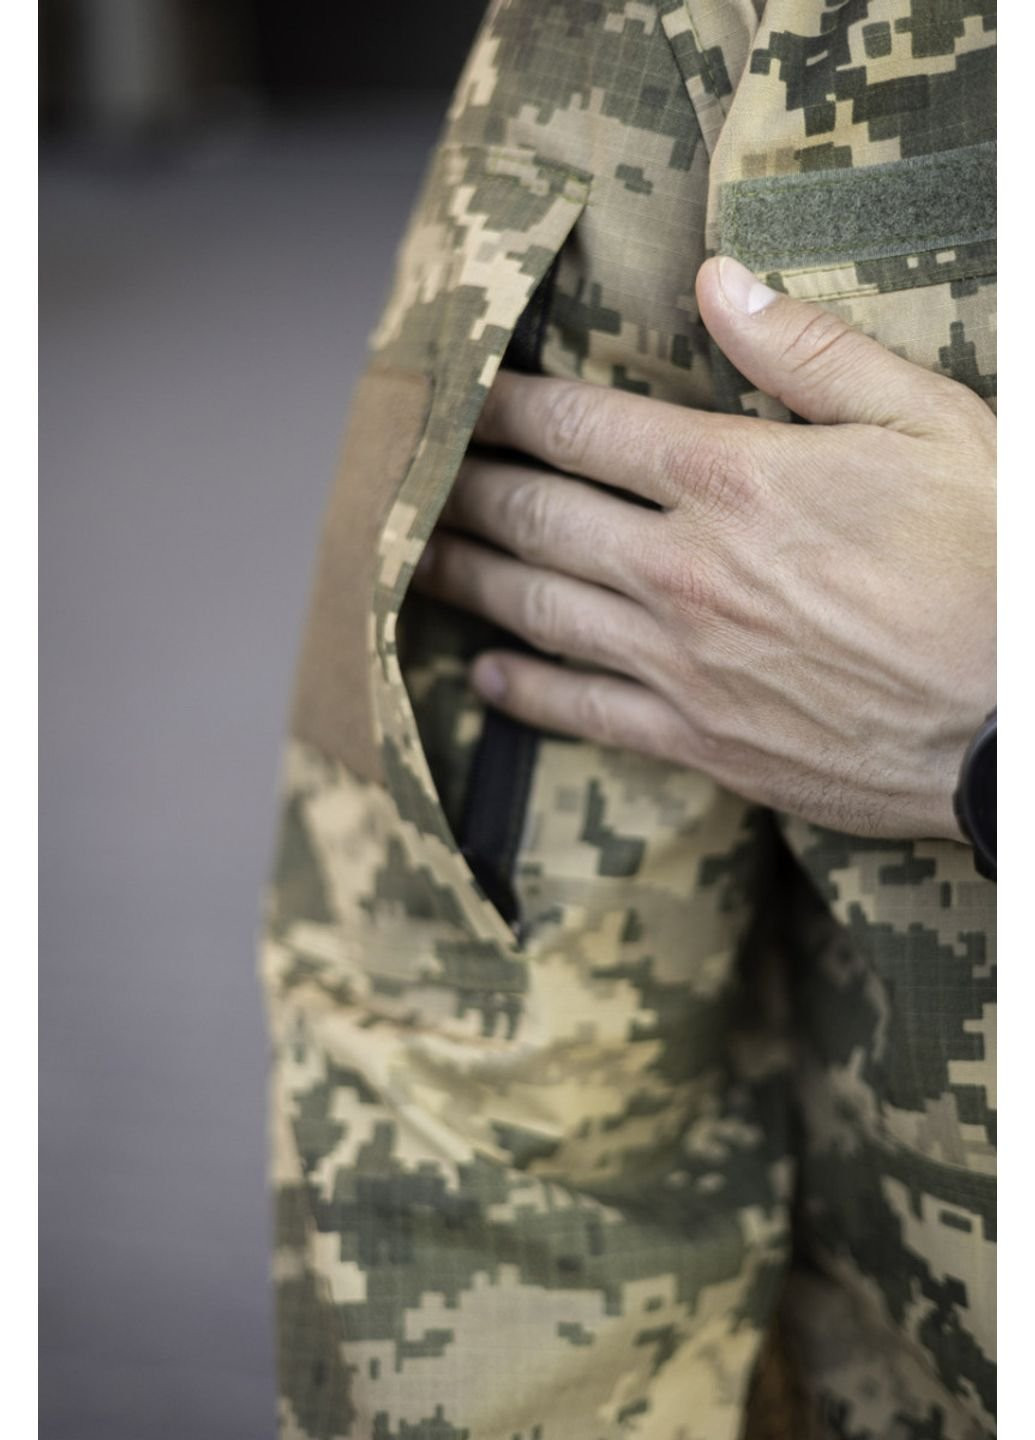 Оливковый (хаки) летний мужской армейский костюм летний для всу (зсу) тактическая форма рип-стоп украина пиксель 52 размер 7113 No Brand